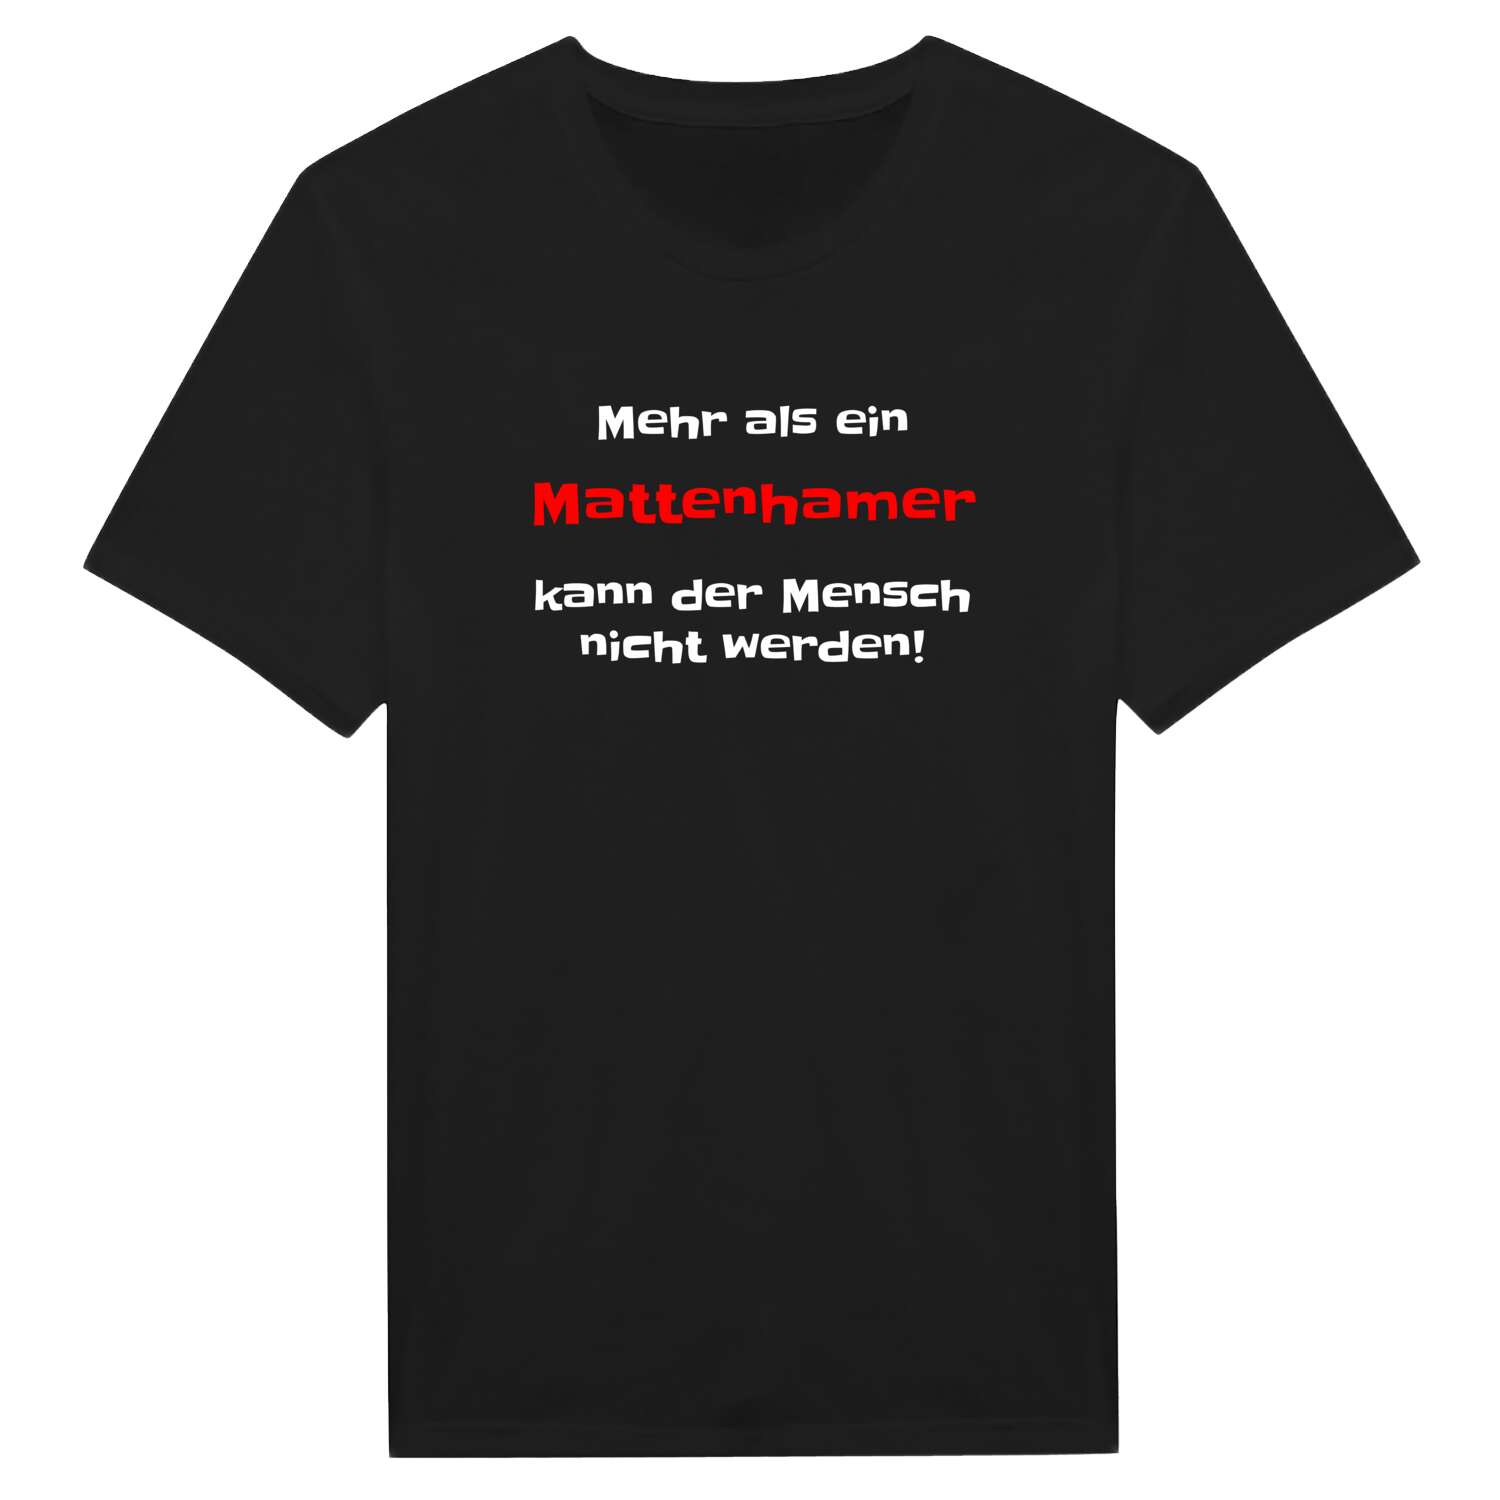 Mattenham T-Shirt »Mehr als ein«